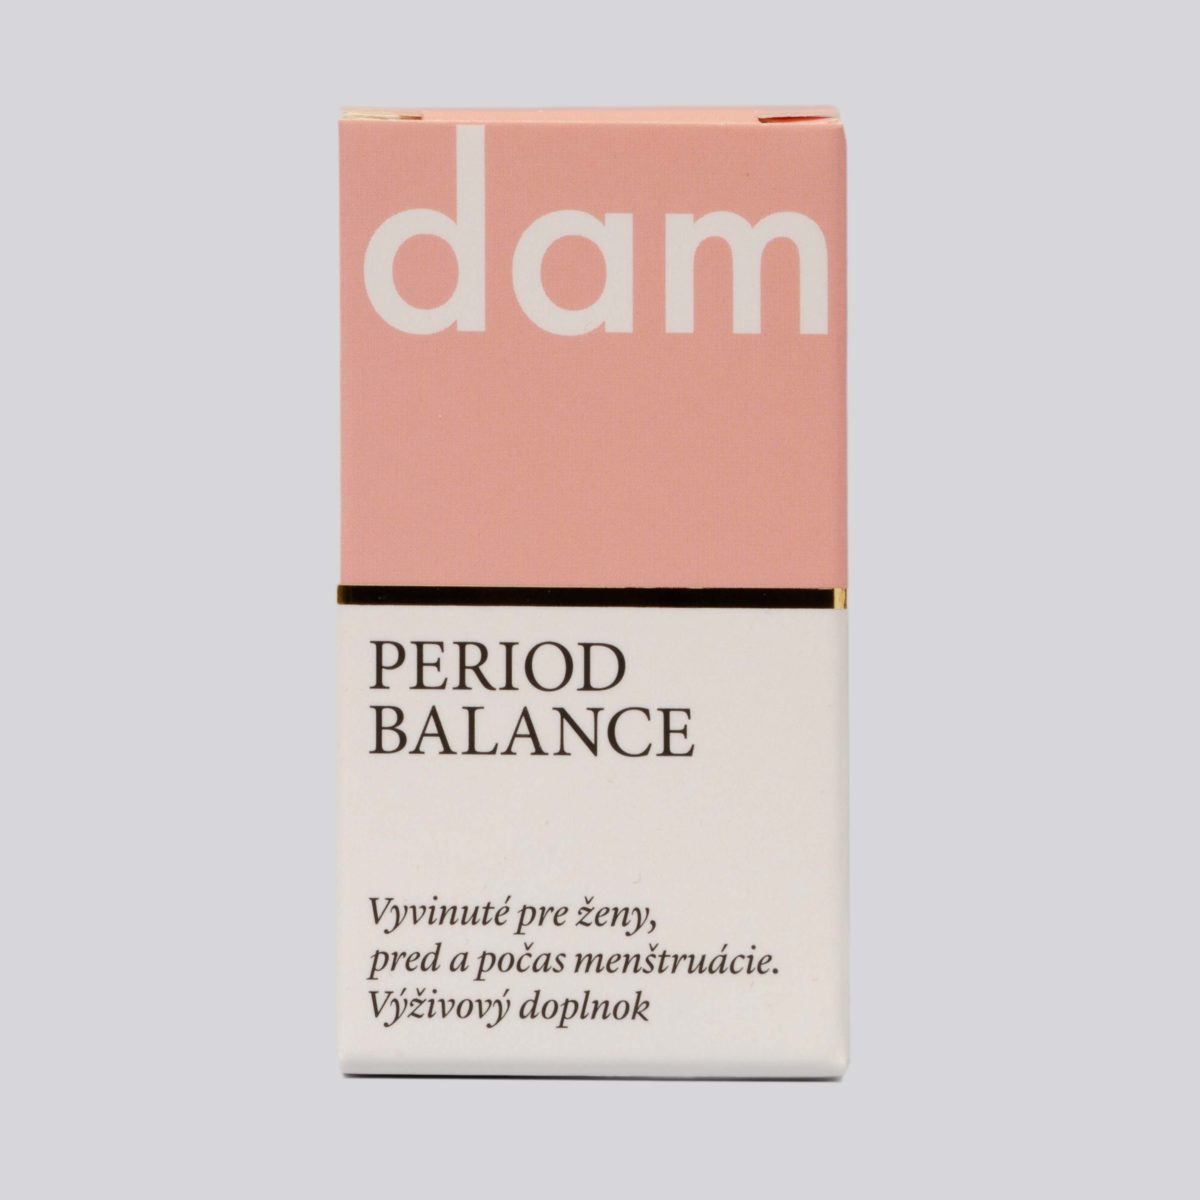 damper period balance